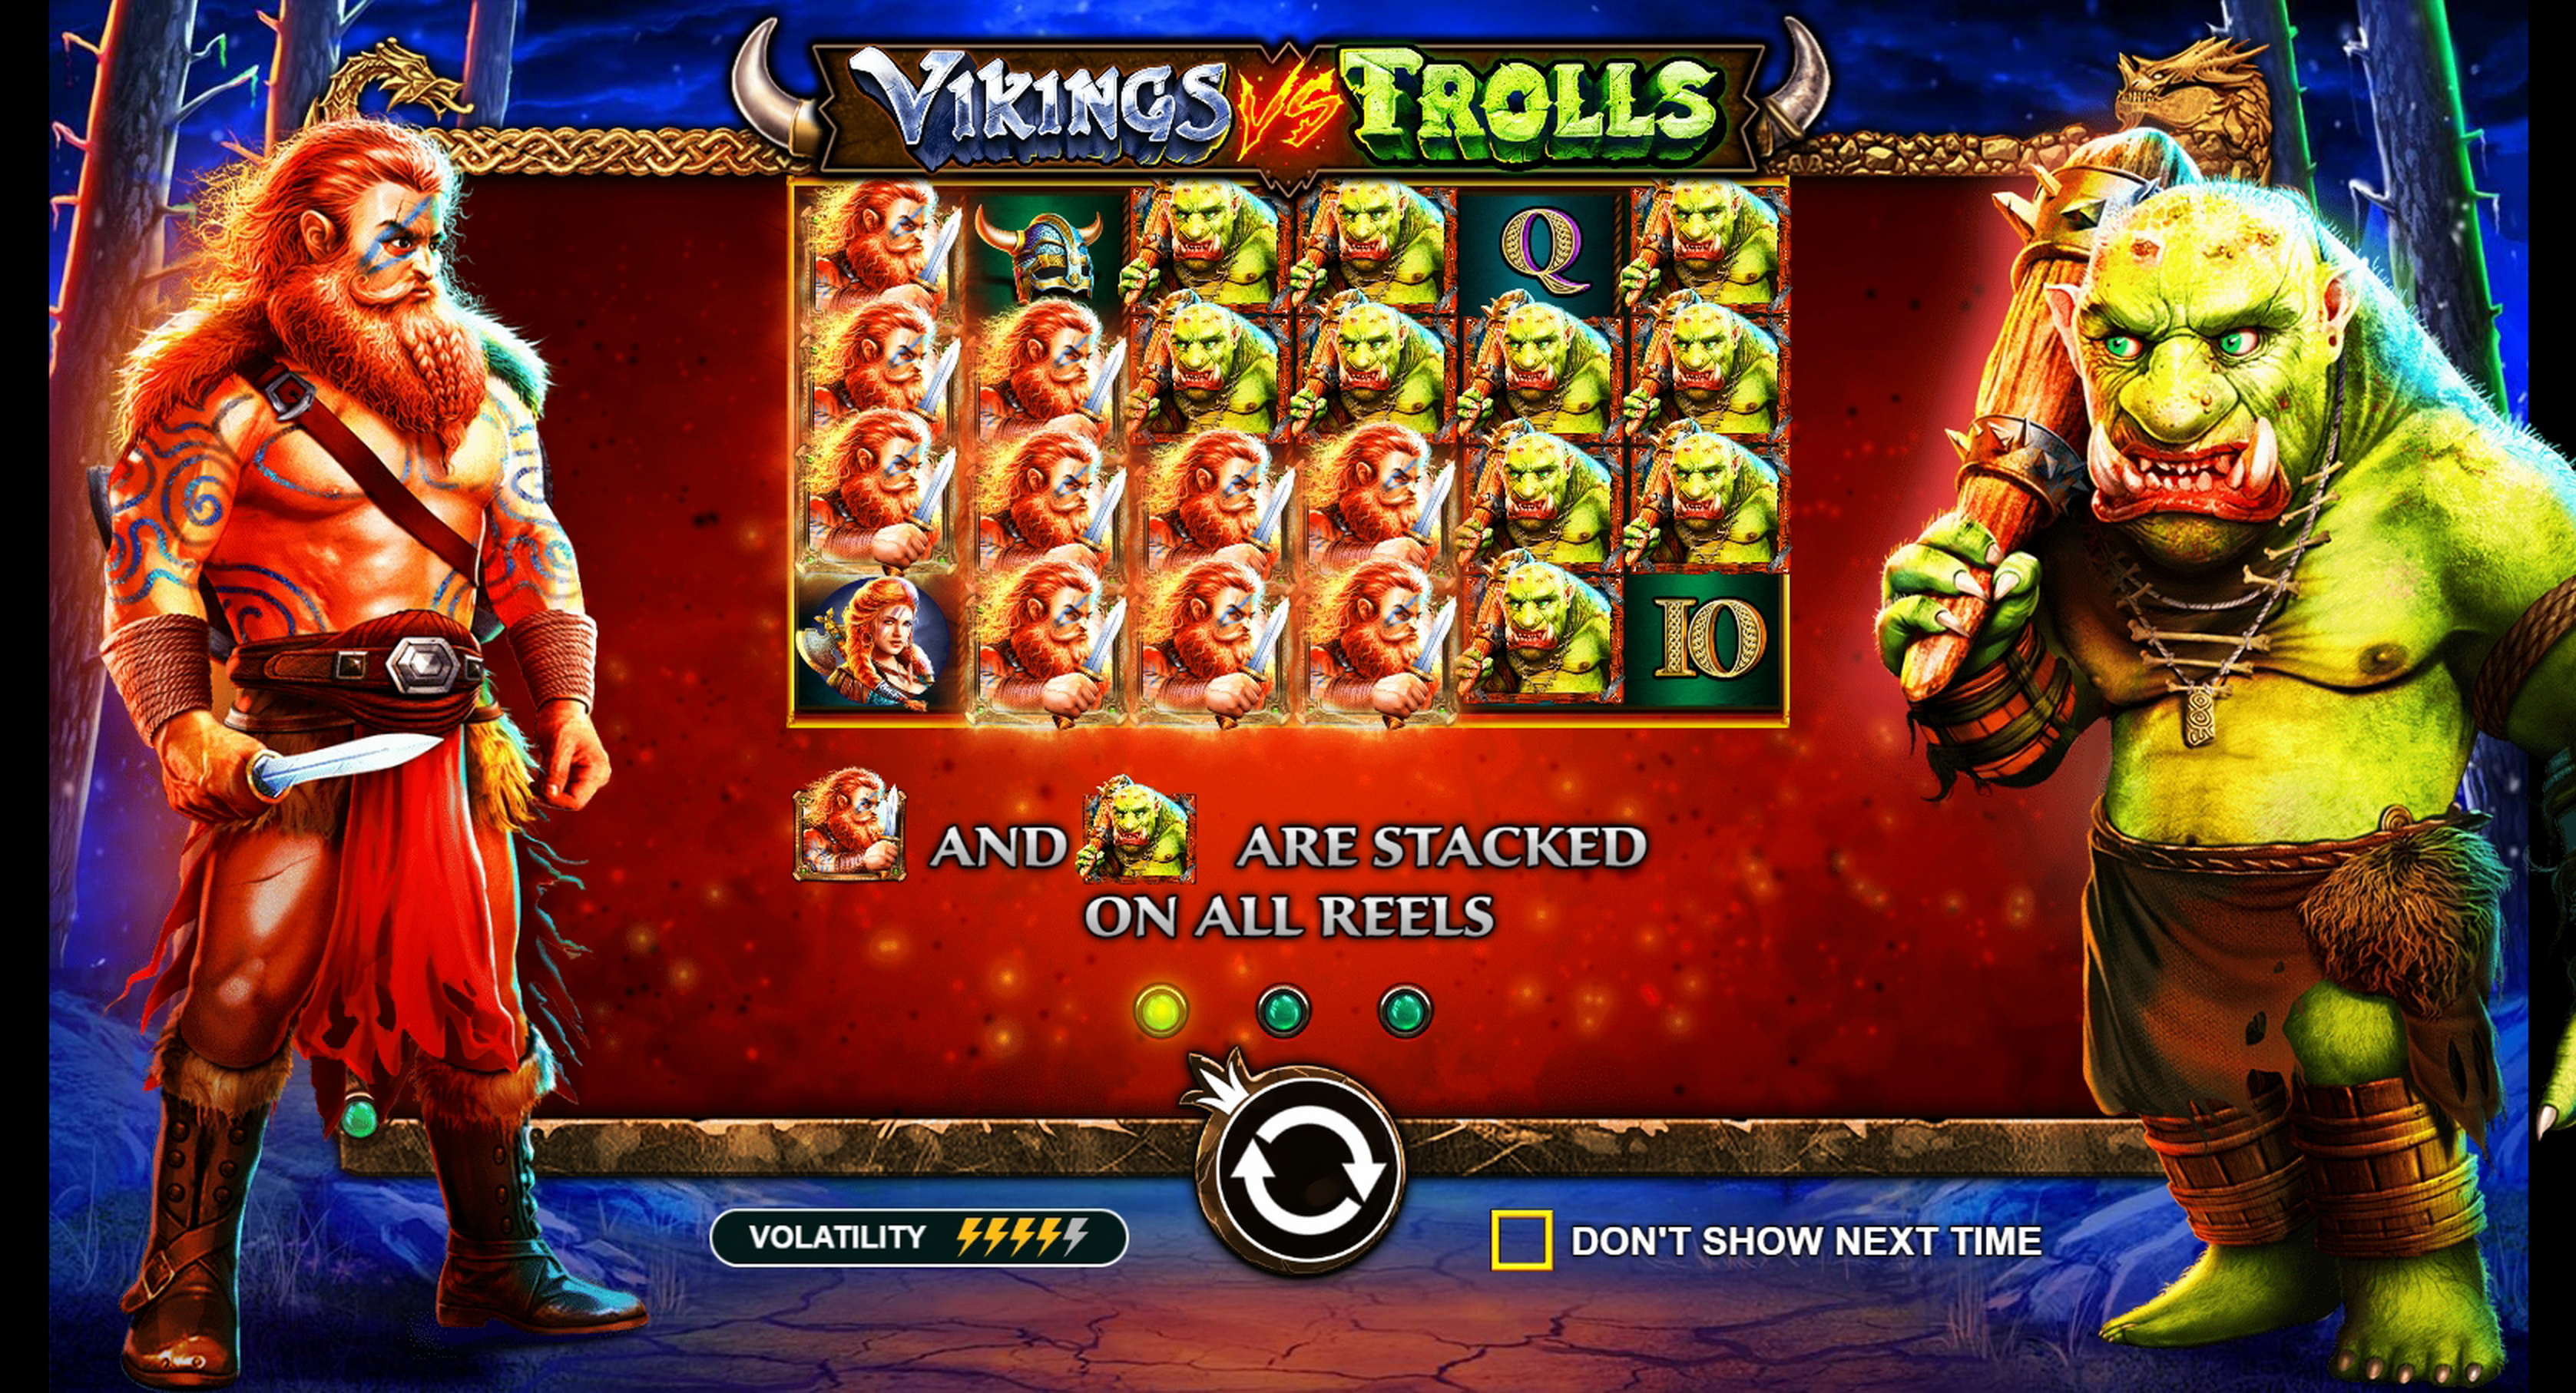 Play Vikings vs Trolls Free Casino Slot Game by Pragmatic Play